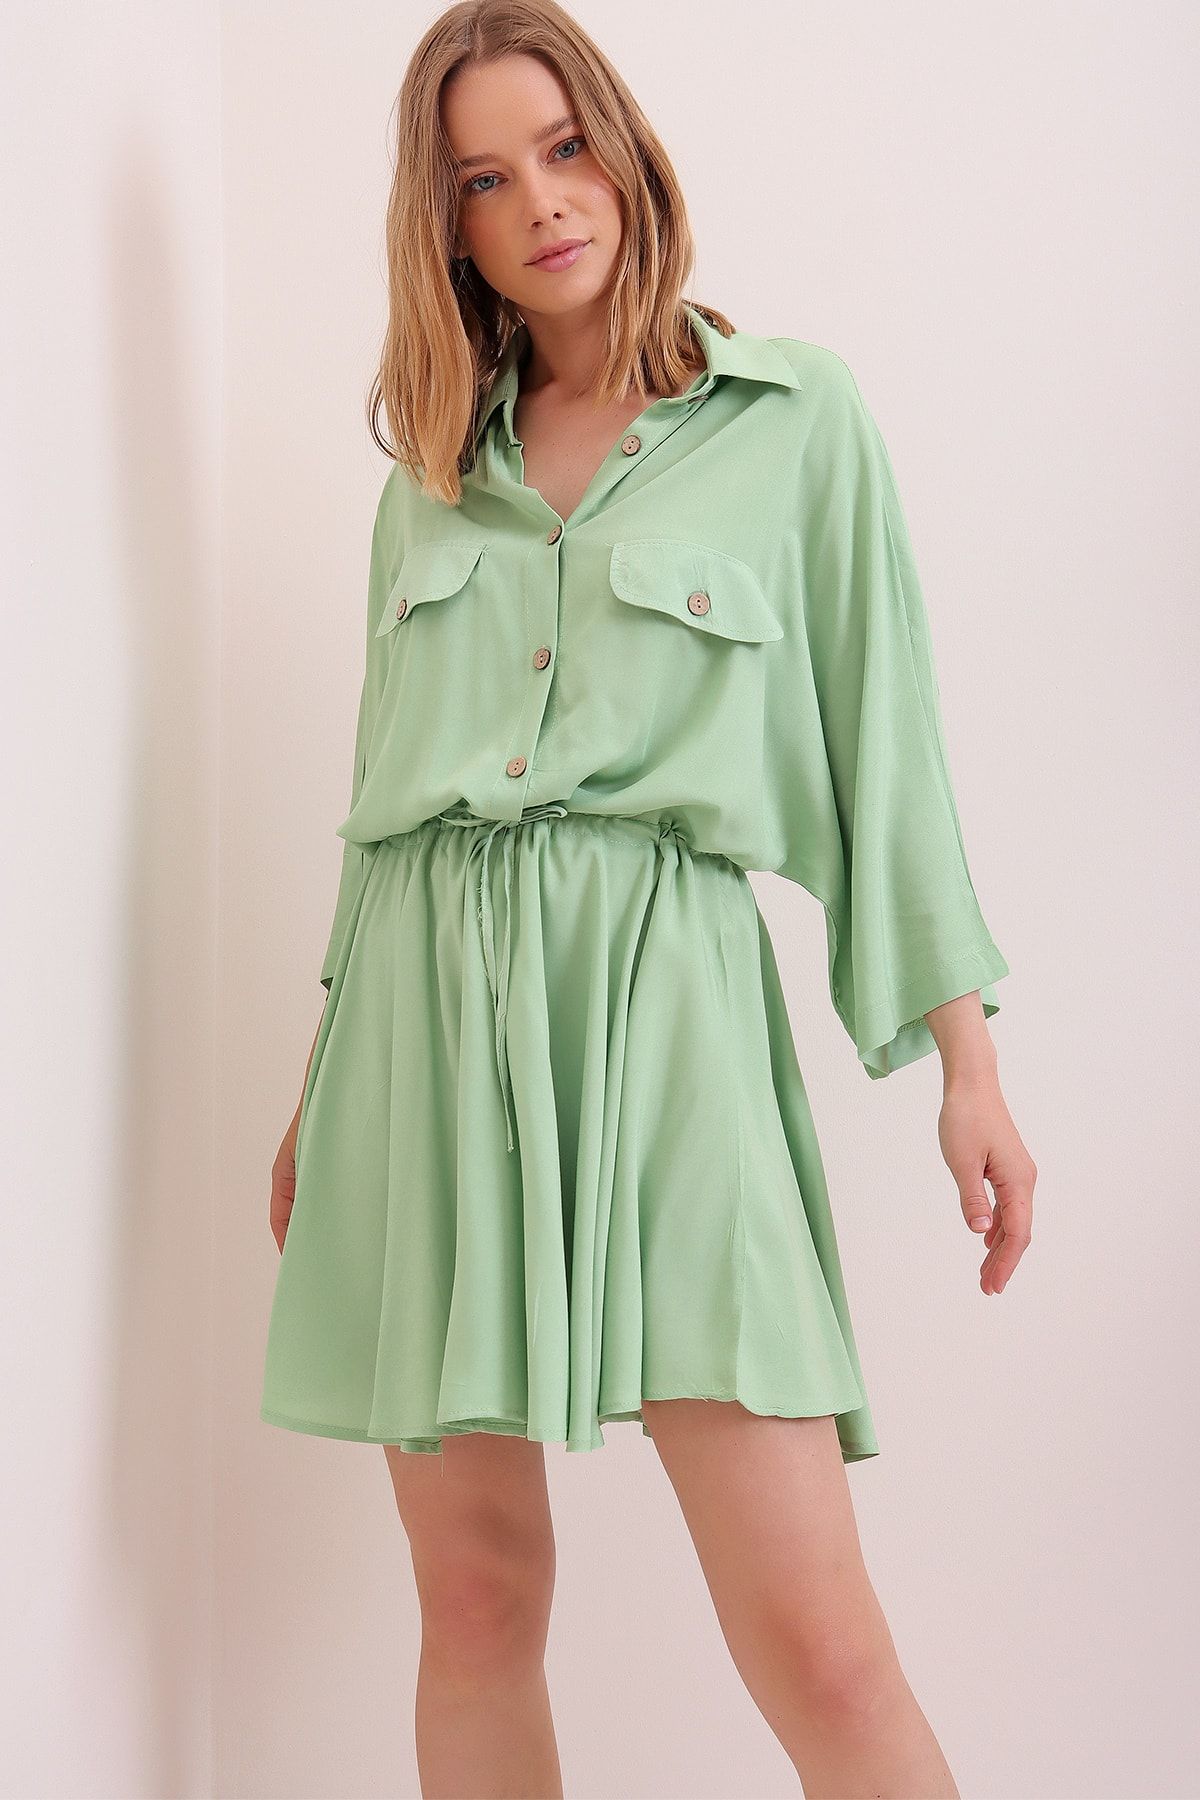 Trend Alaçatı Stili Kadın Çağla Yeşili Safari Dokuma Gömlek Elbise ALC-X6196